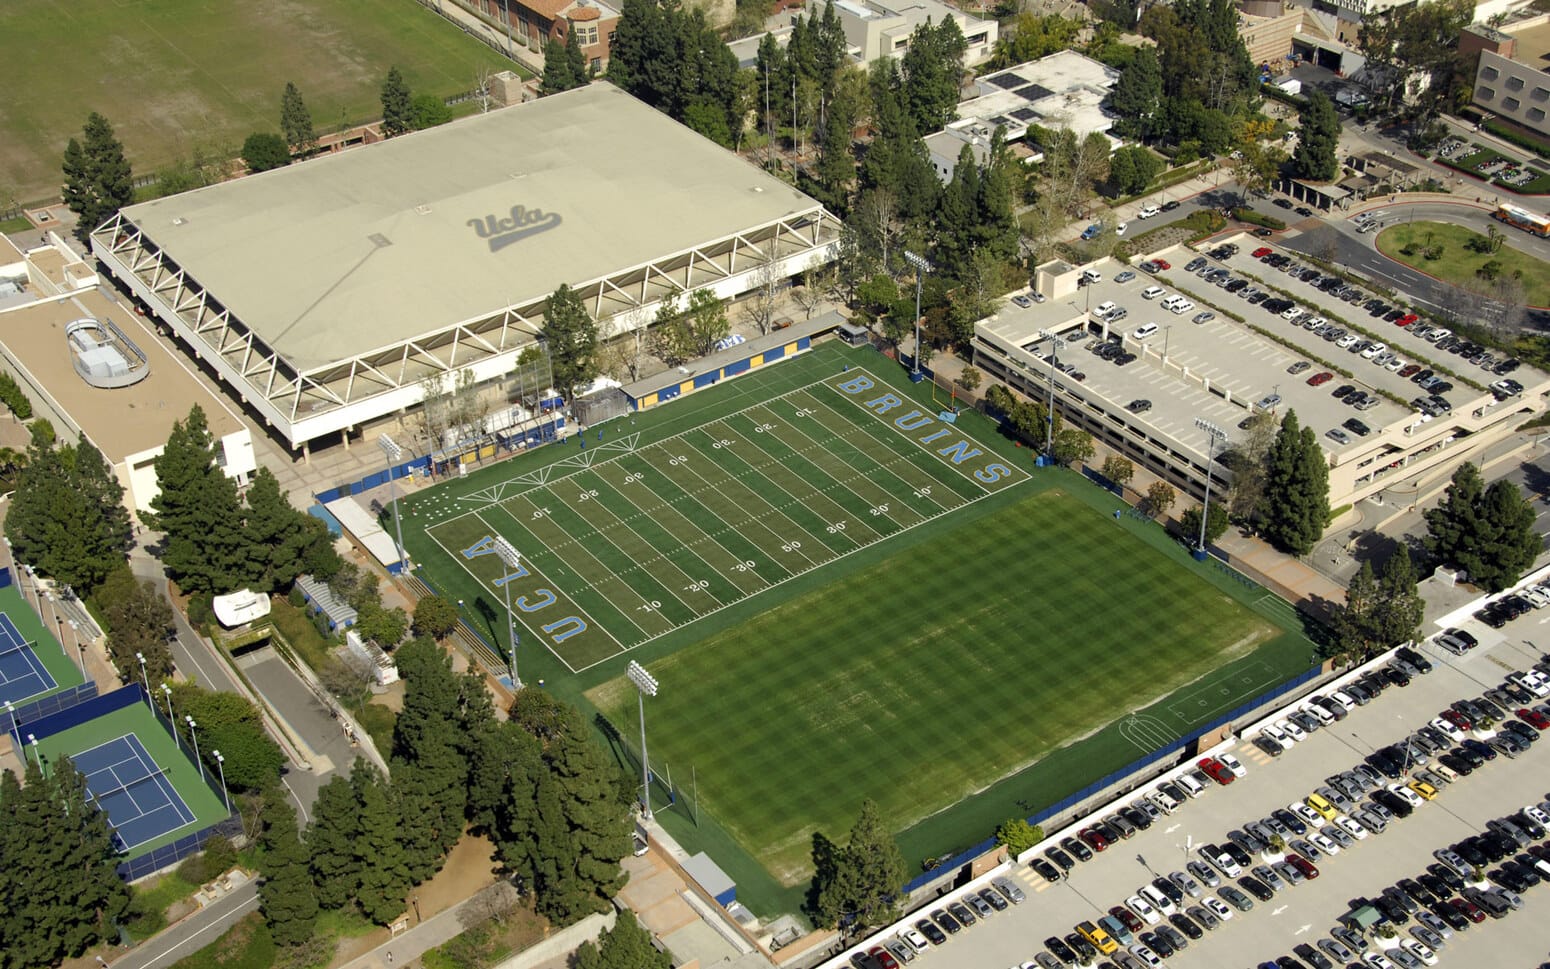 UCLA Spaulding Field